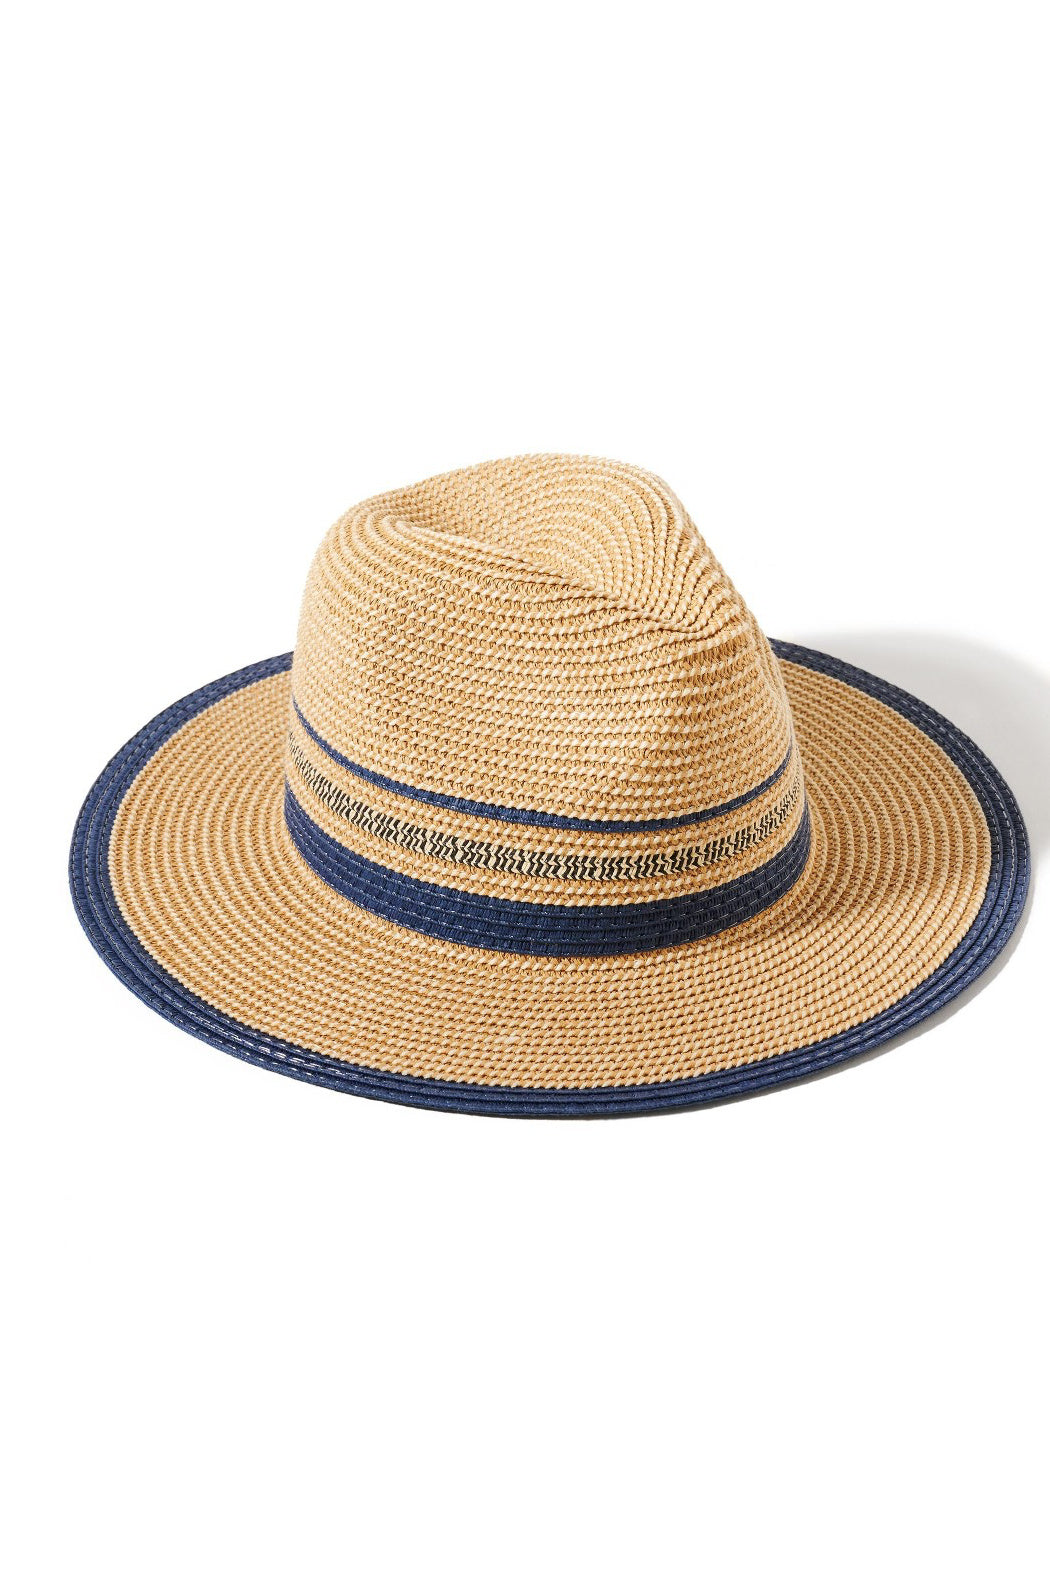 2 Tone Panama Hat